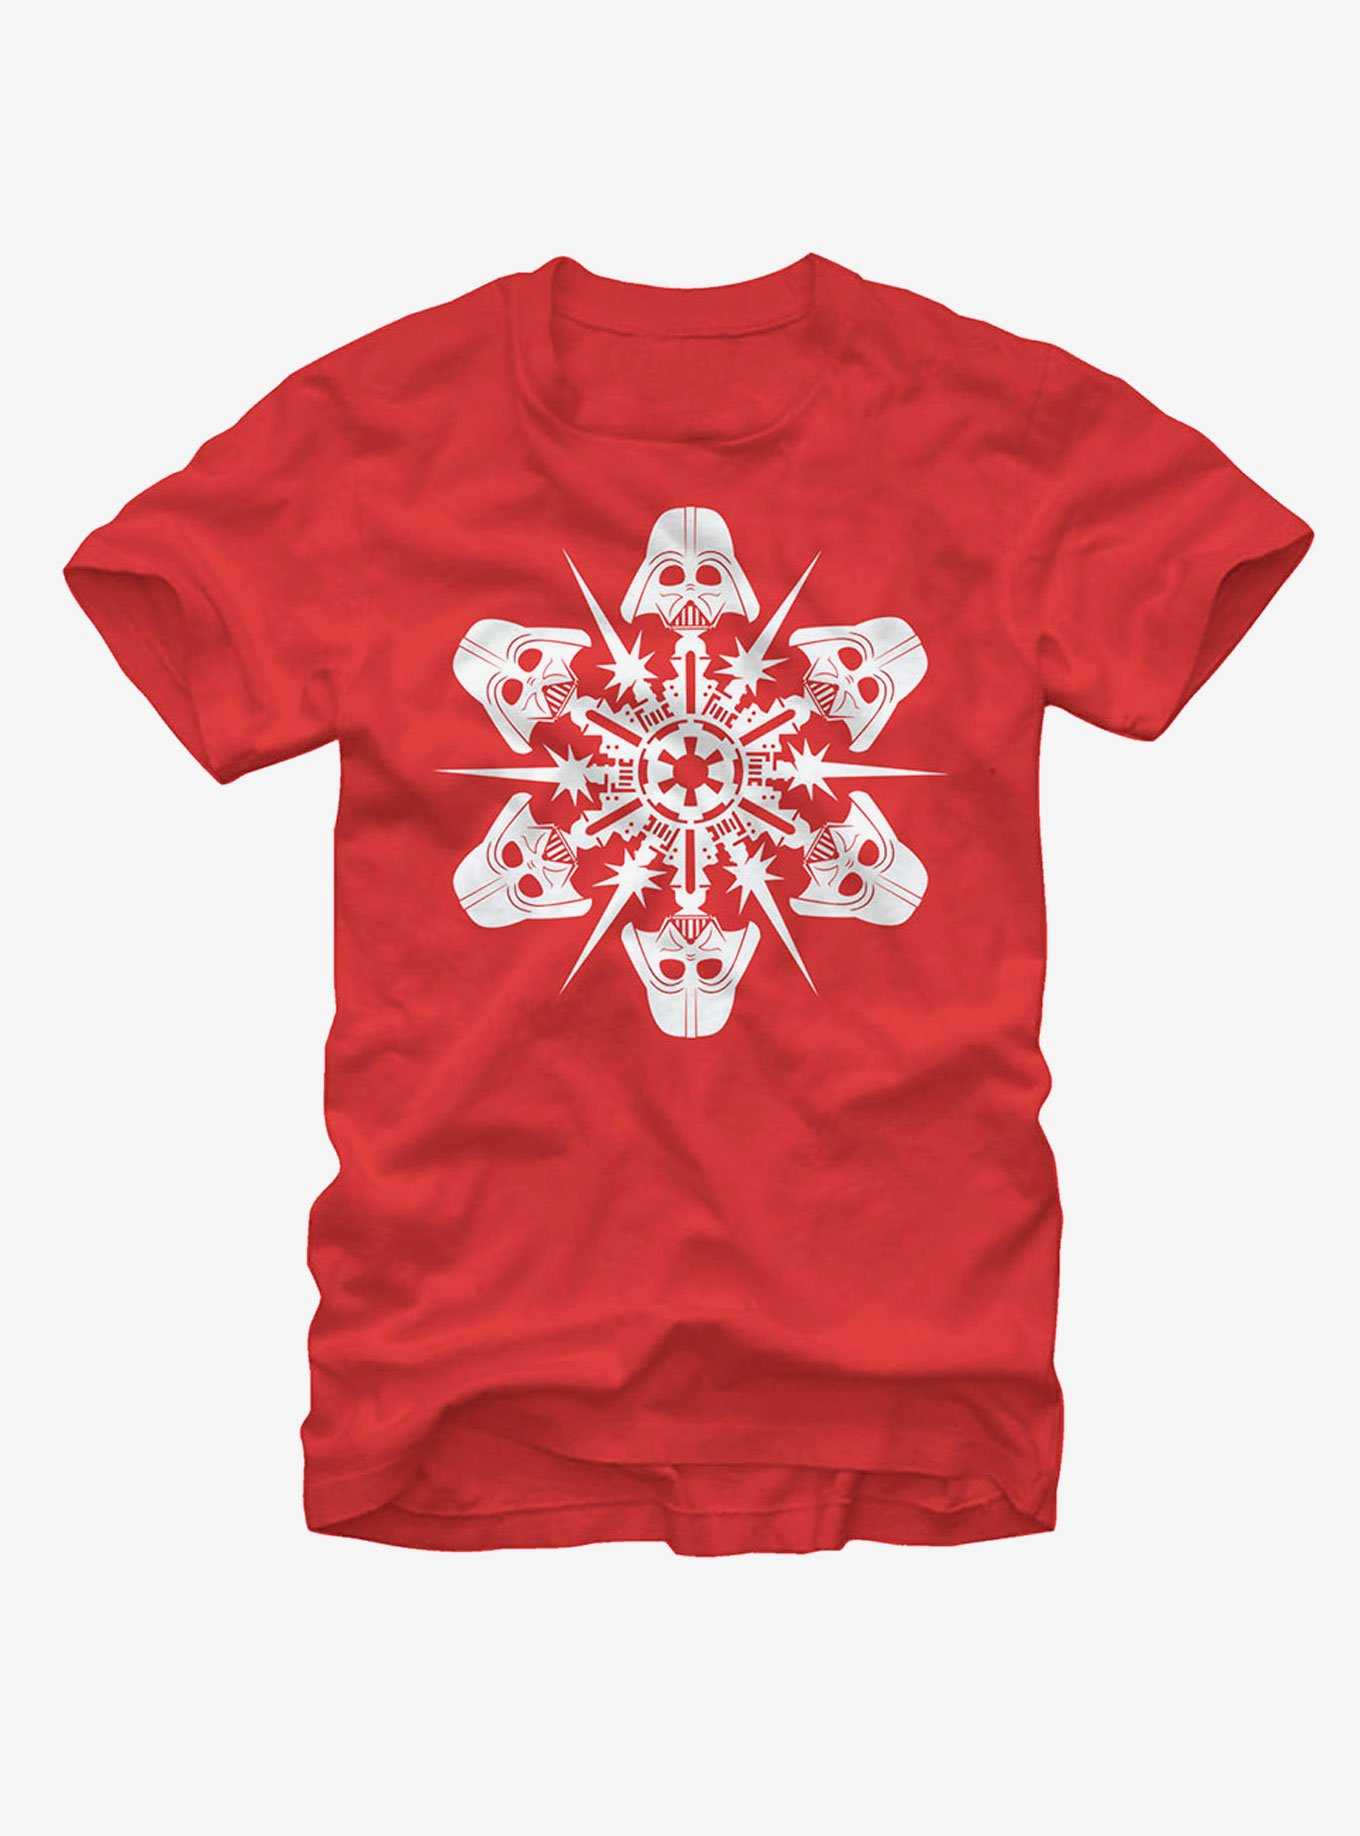 Star Wars Darth Vader Christmas Snowflake T-Shirt, , hi-res